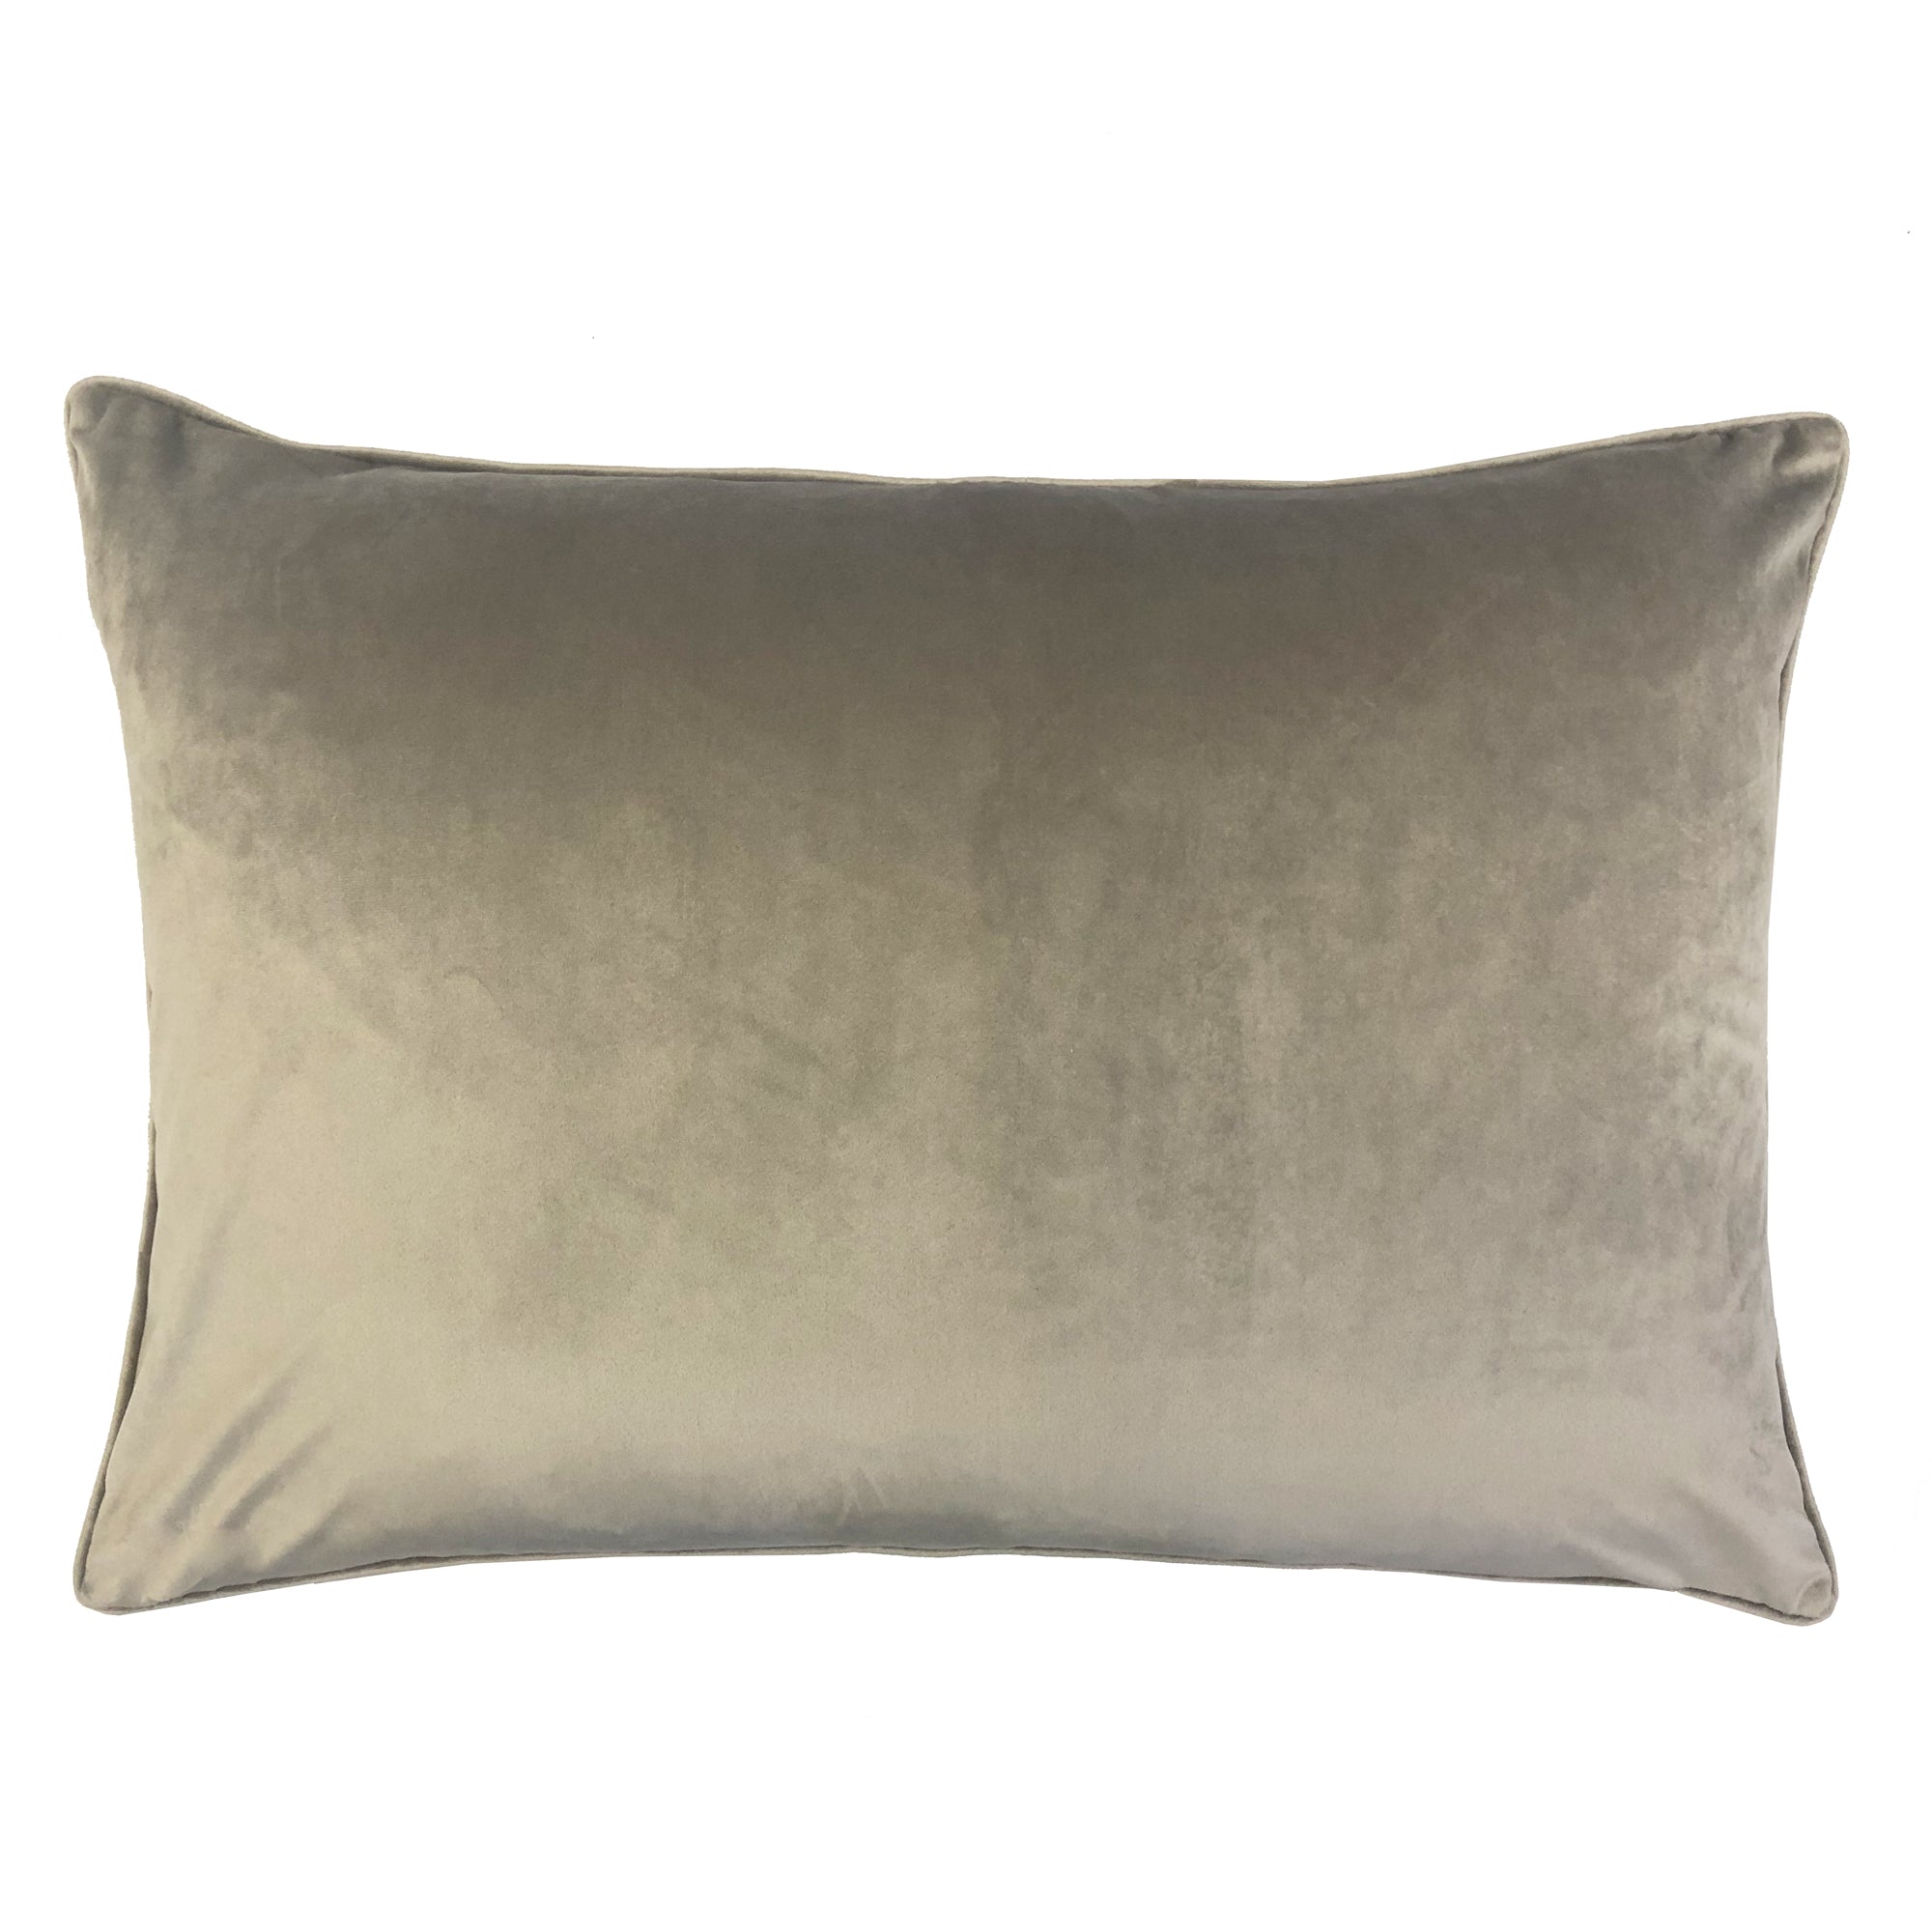 Alaya Pillows | Size 18X26